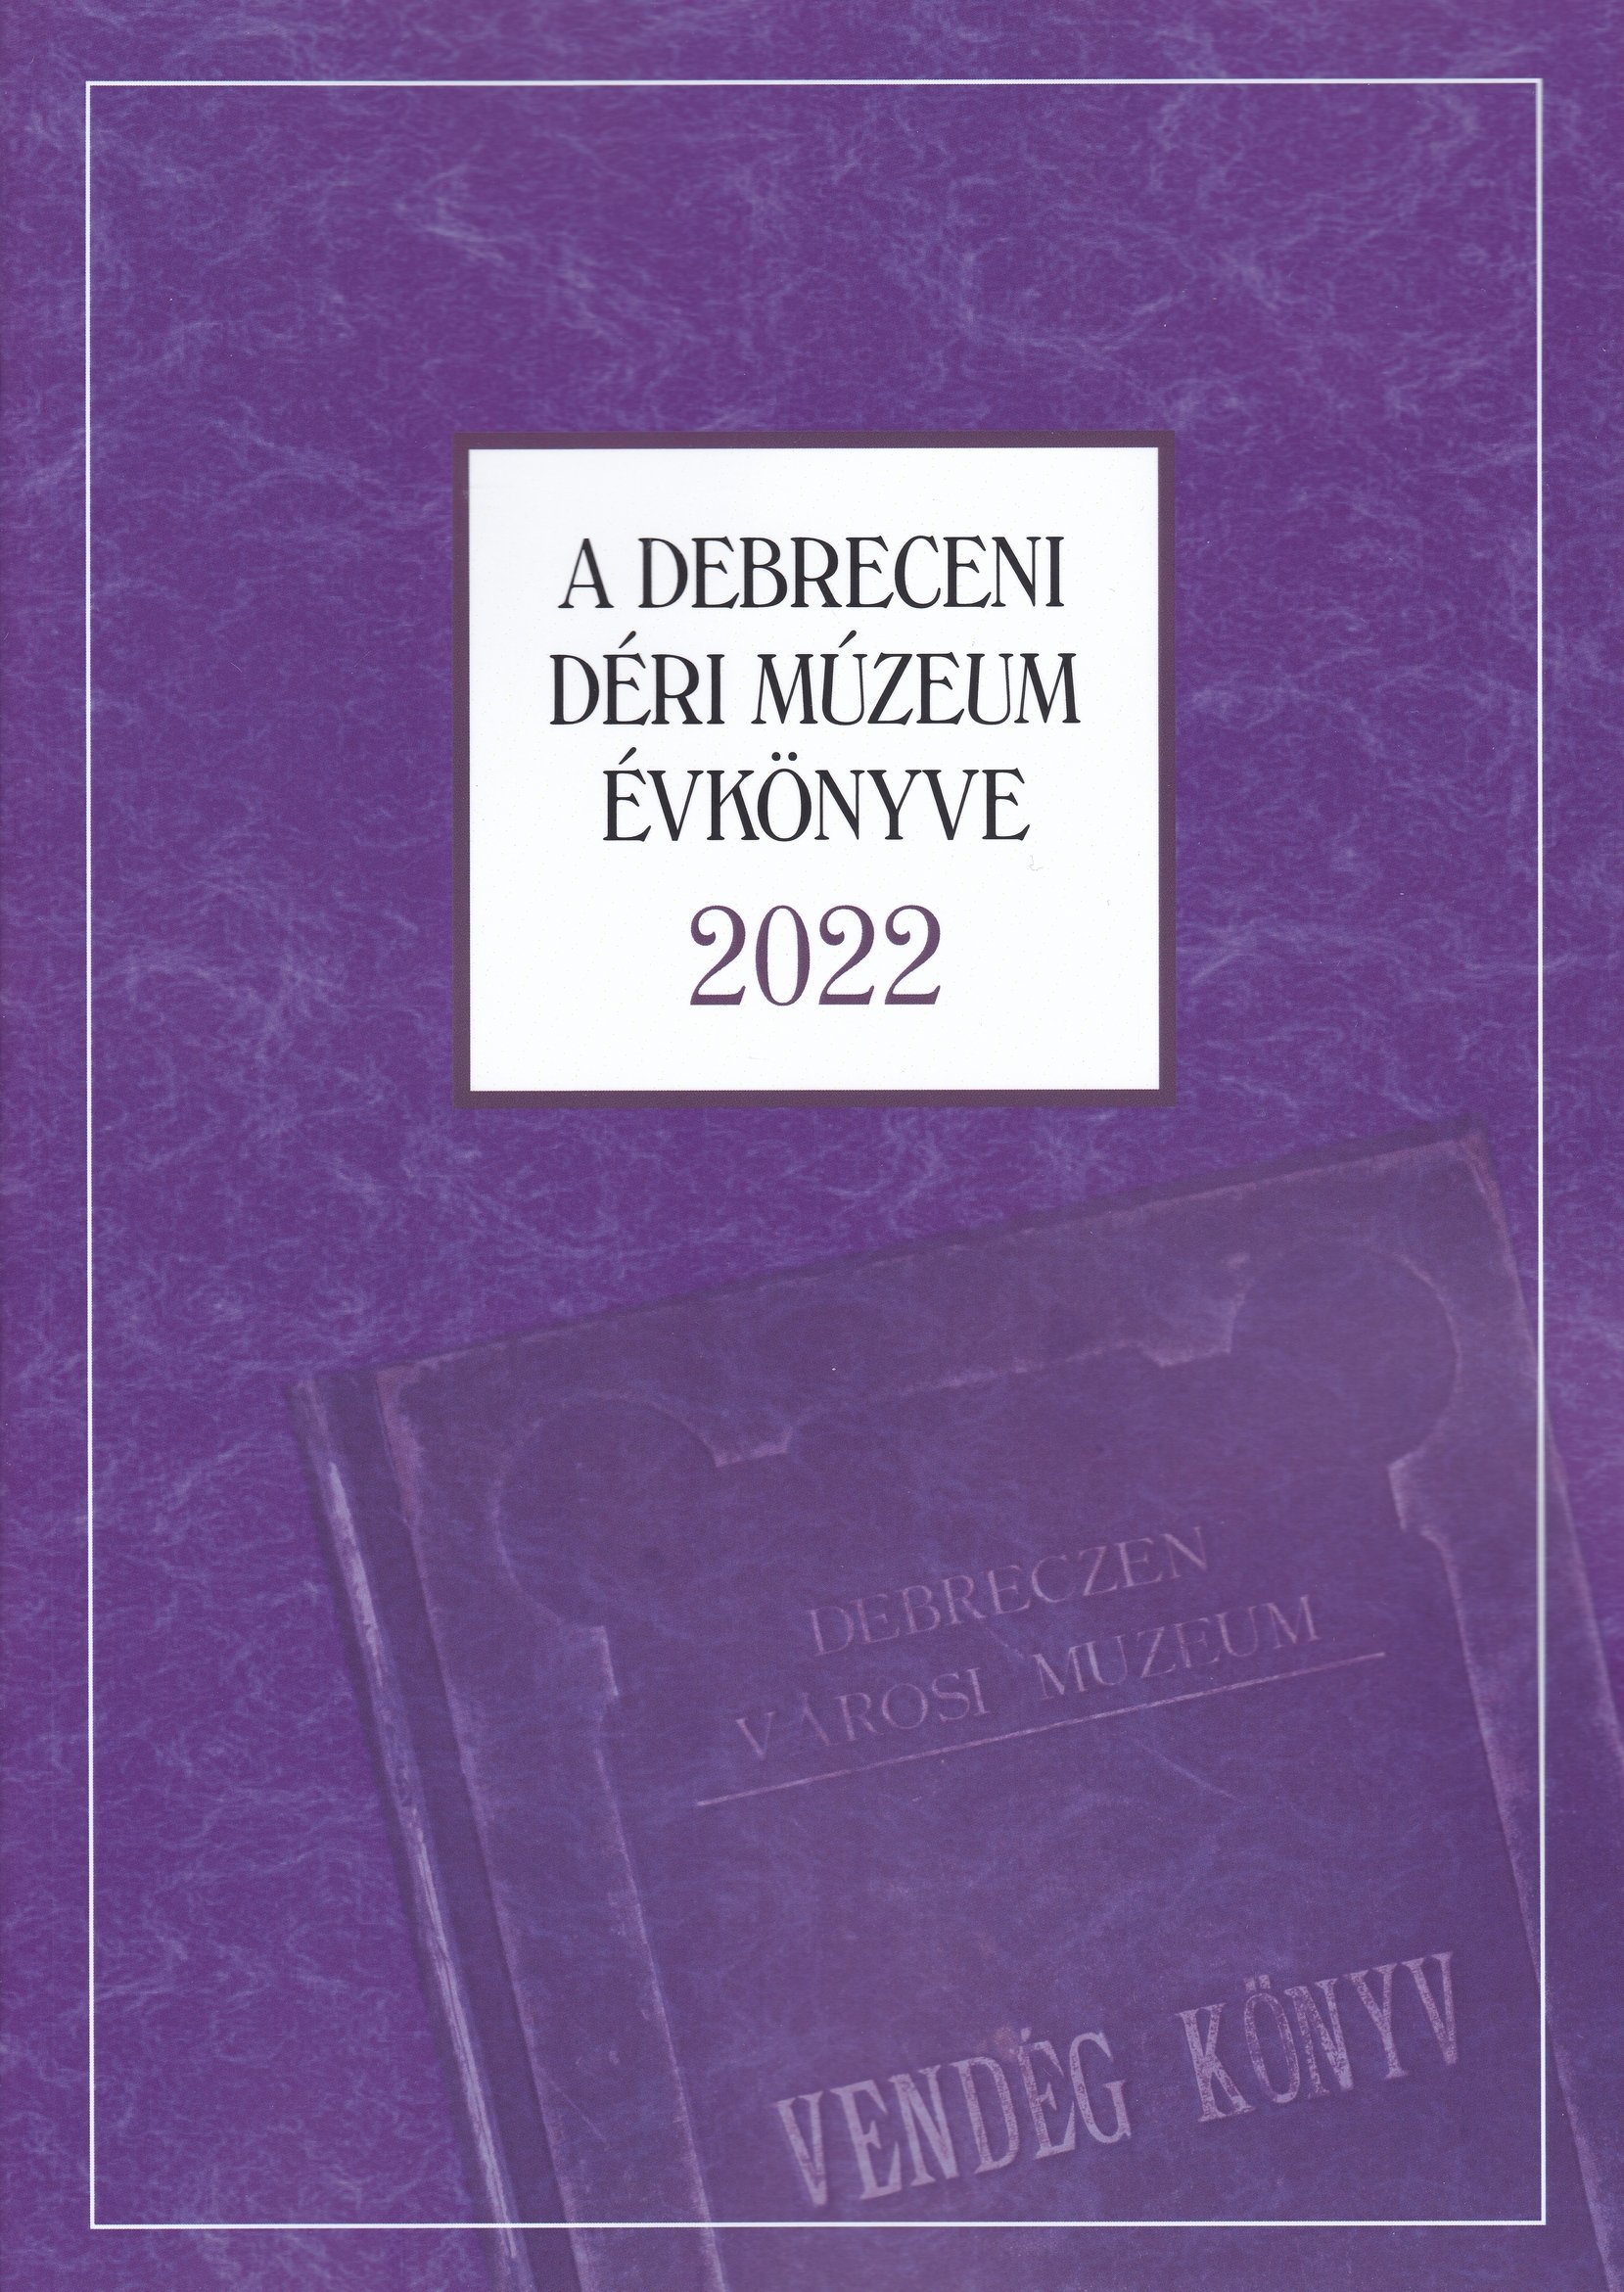 A Debreceni Déri Múzeum kiadványai 2022/93. - A Debreceni Déri Múzeum Évkönyve 2022 (Rippl-Rónai Múzeum CC BY-NC-ND)